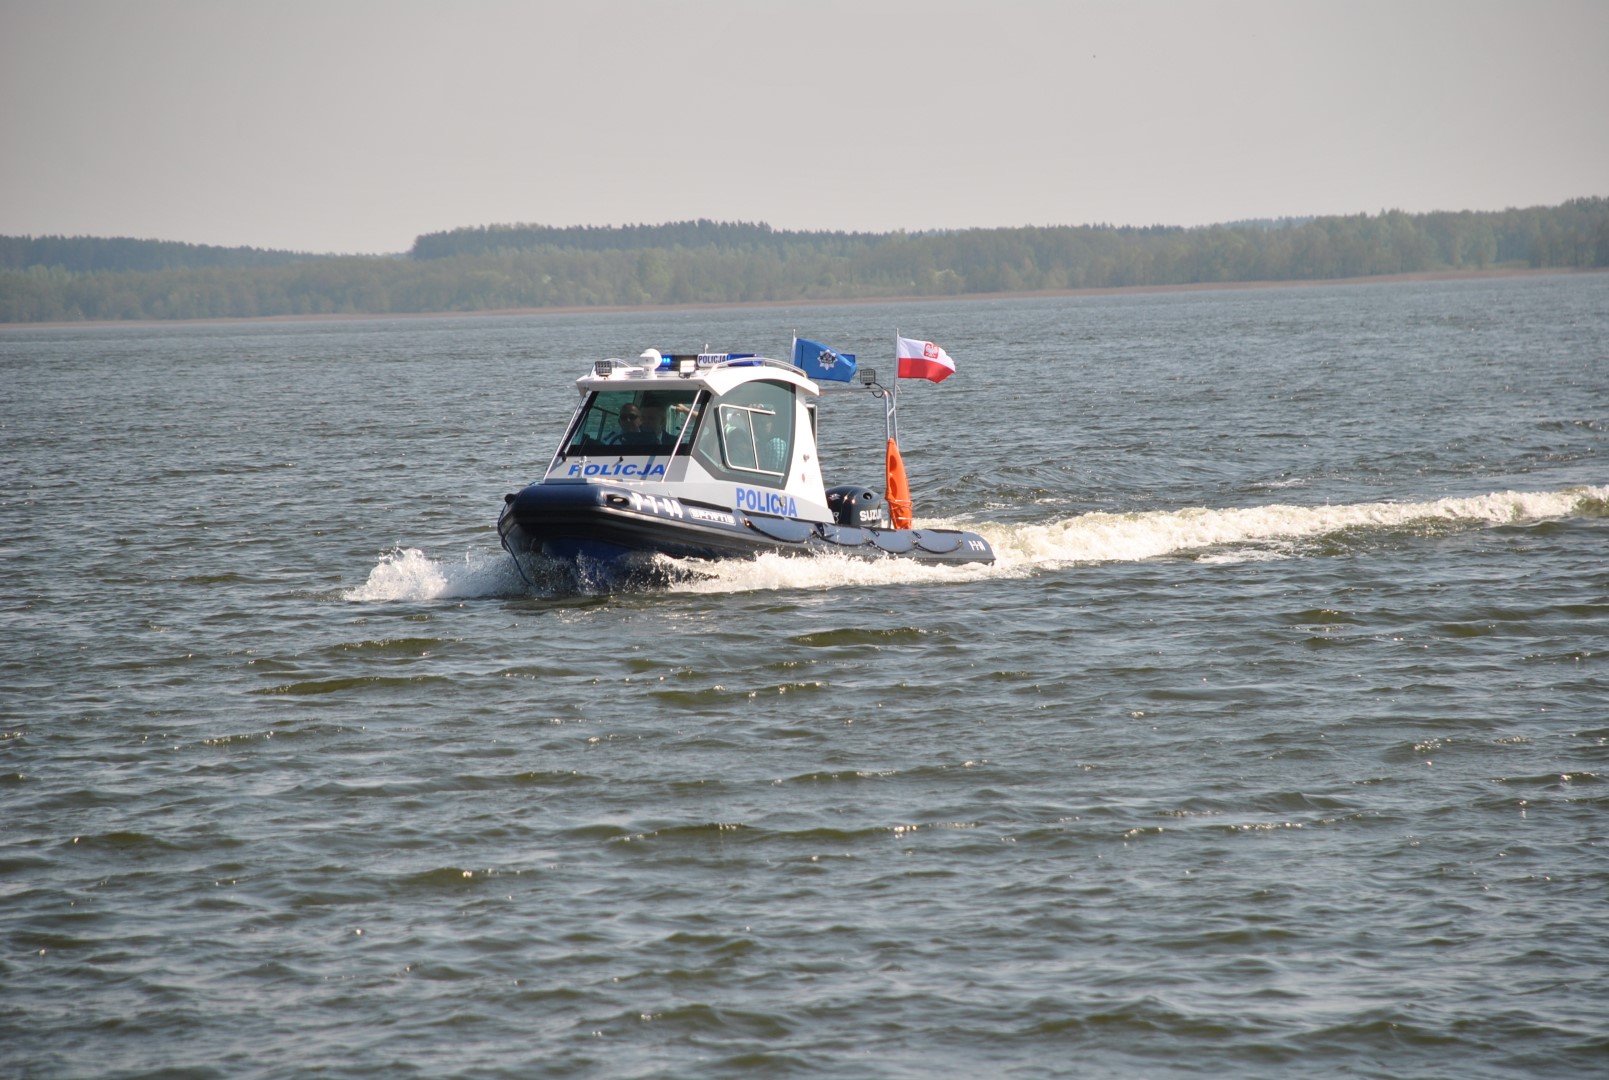 Nowa policyjna łódź na wodzie